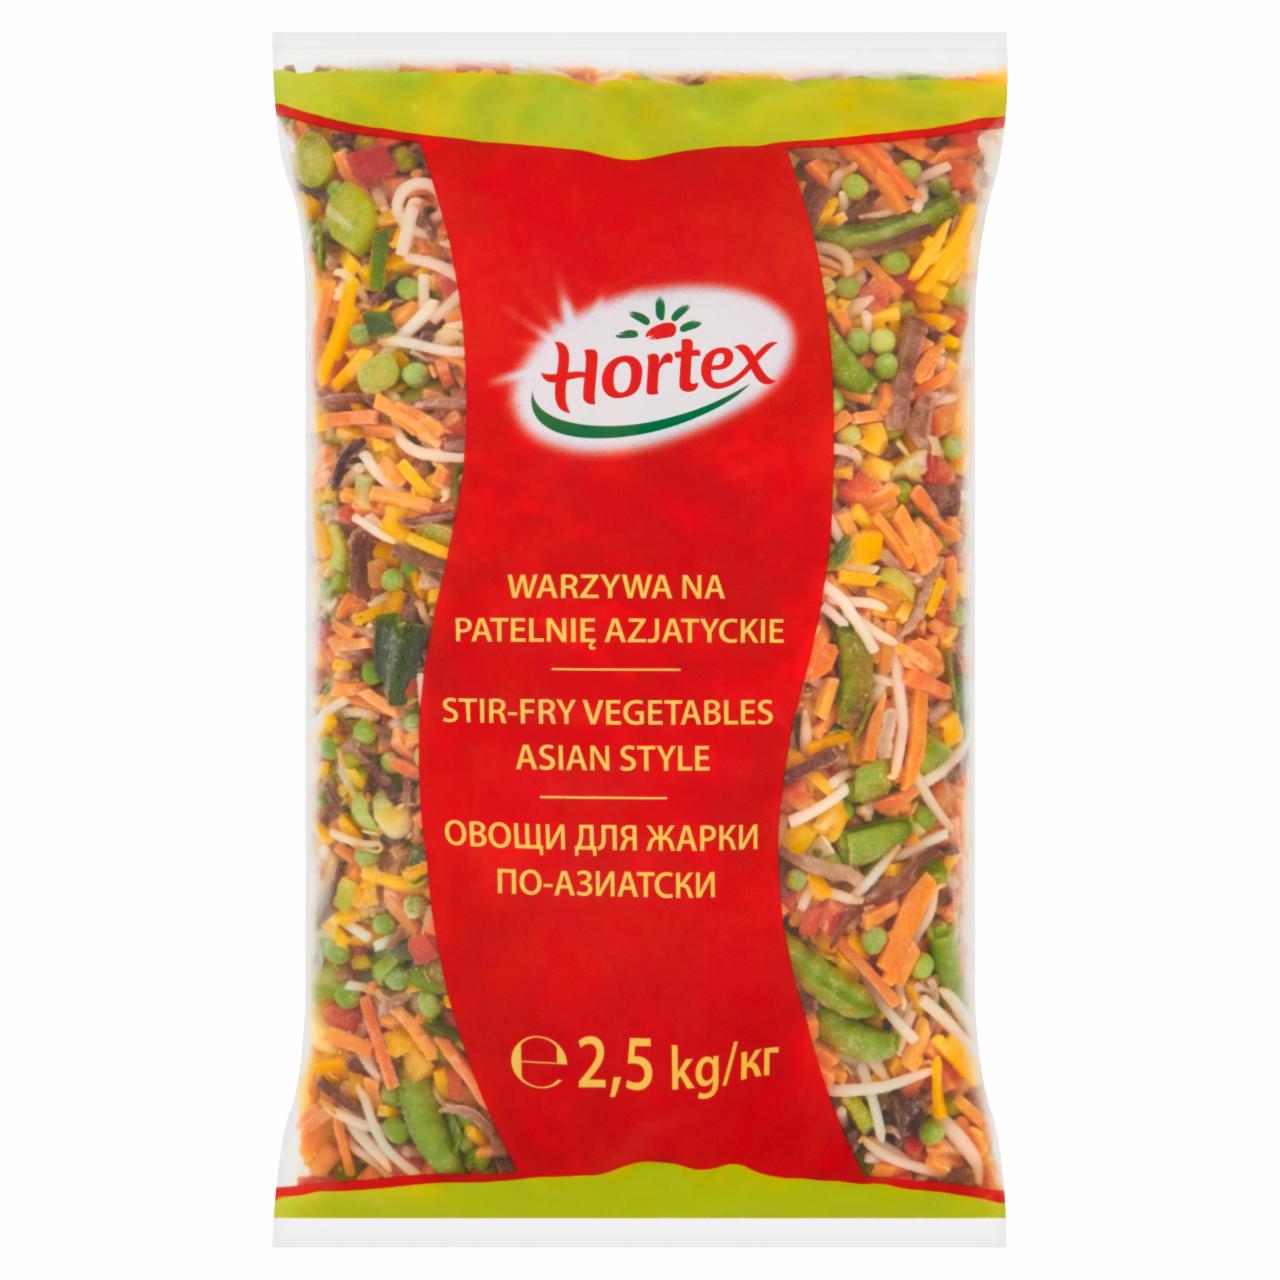 Zdjęcia - Hortex Warzywa na patelnię azjatyckie 2,5 kg